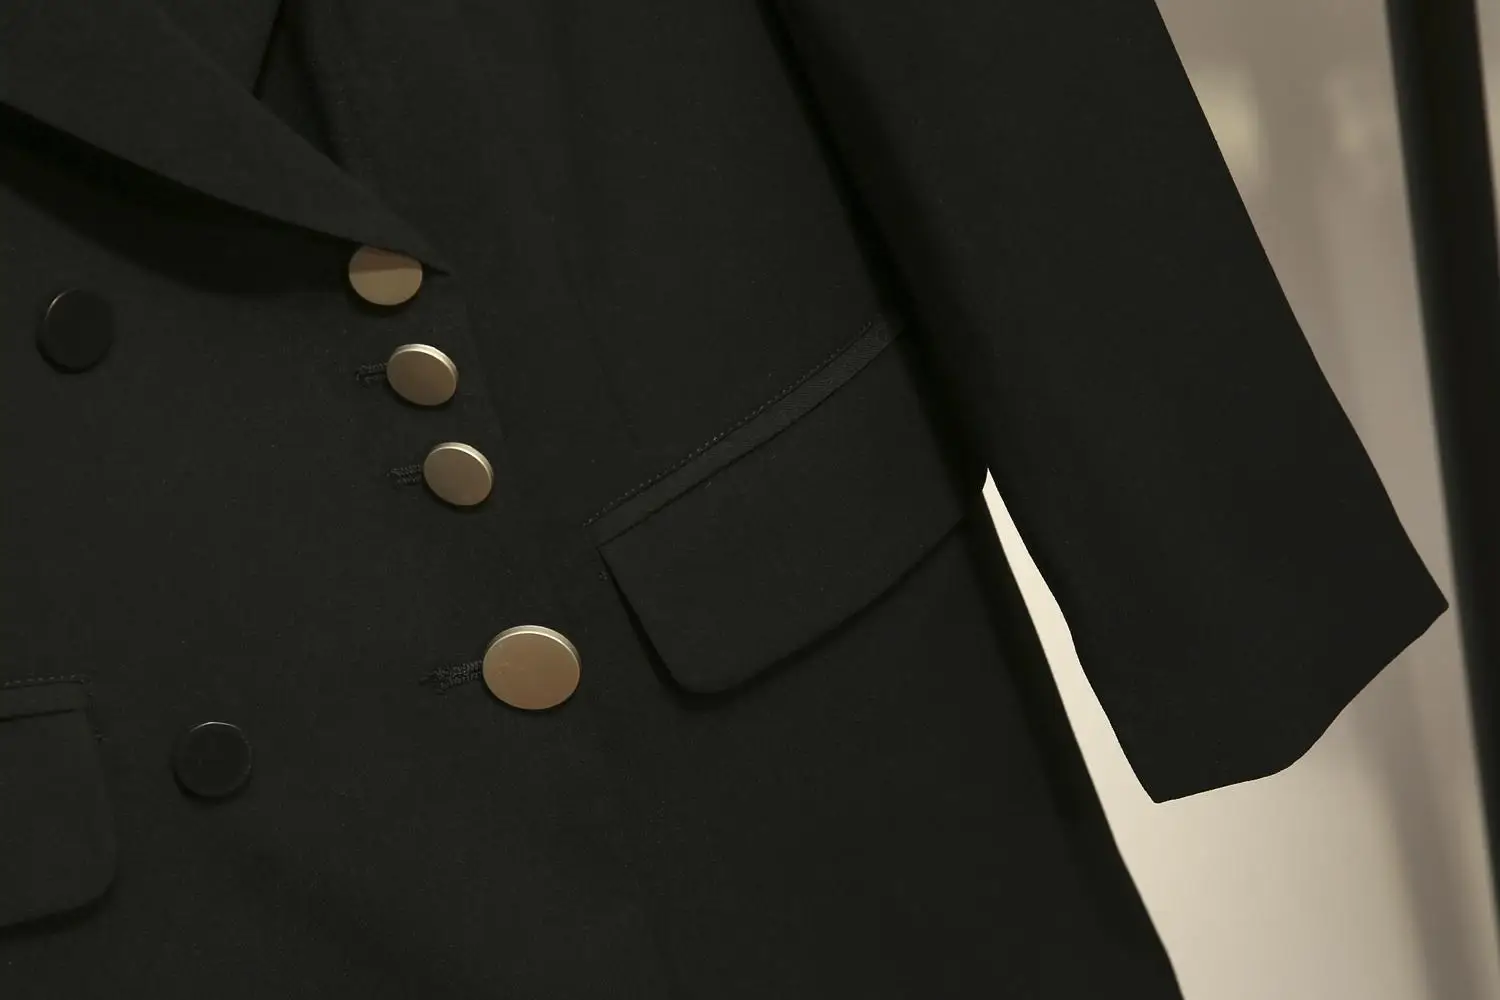 XL-5XL Плюс Размер Осень Зима Женский Блейзер костюм черный женский офисный жакет двойные приталенные пиджаки Большой размер женское пальто Верхняя одежда